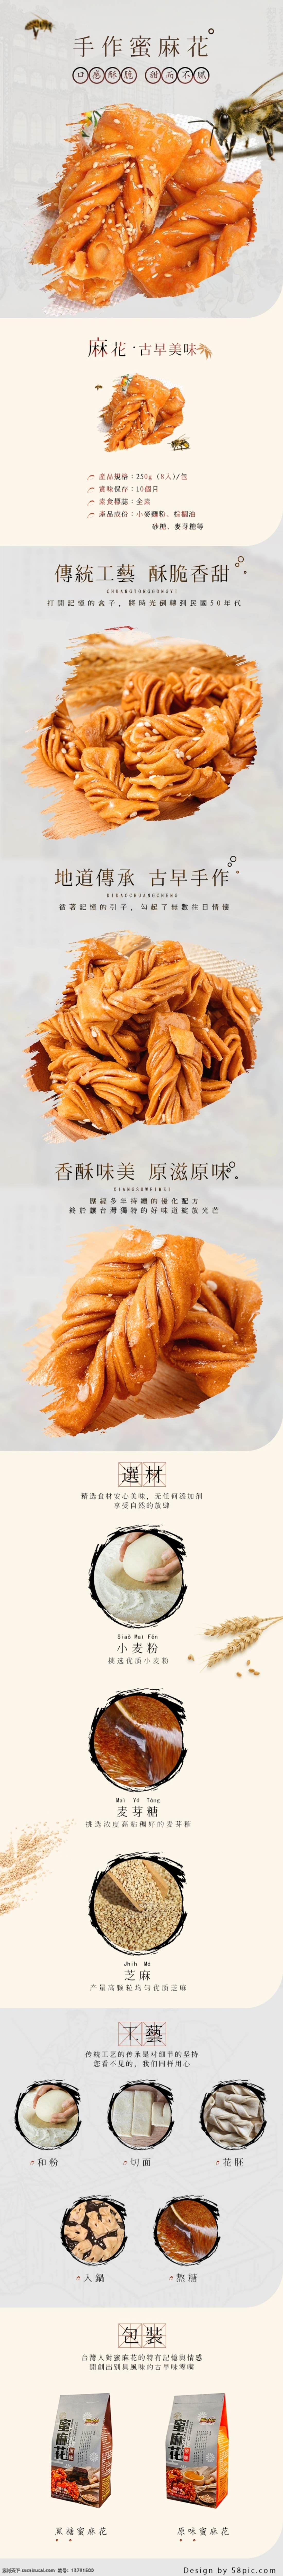 中国 风 古 早 美味 零食 小吃 蜂蜜 蜜 麻花 详情 台湾特产 中国风 手作 蜜麻花 古早